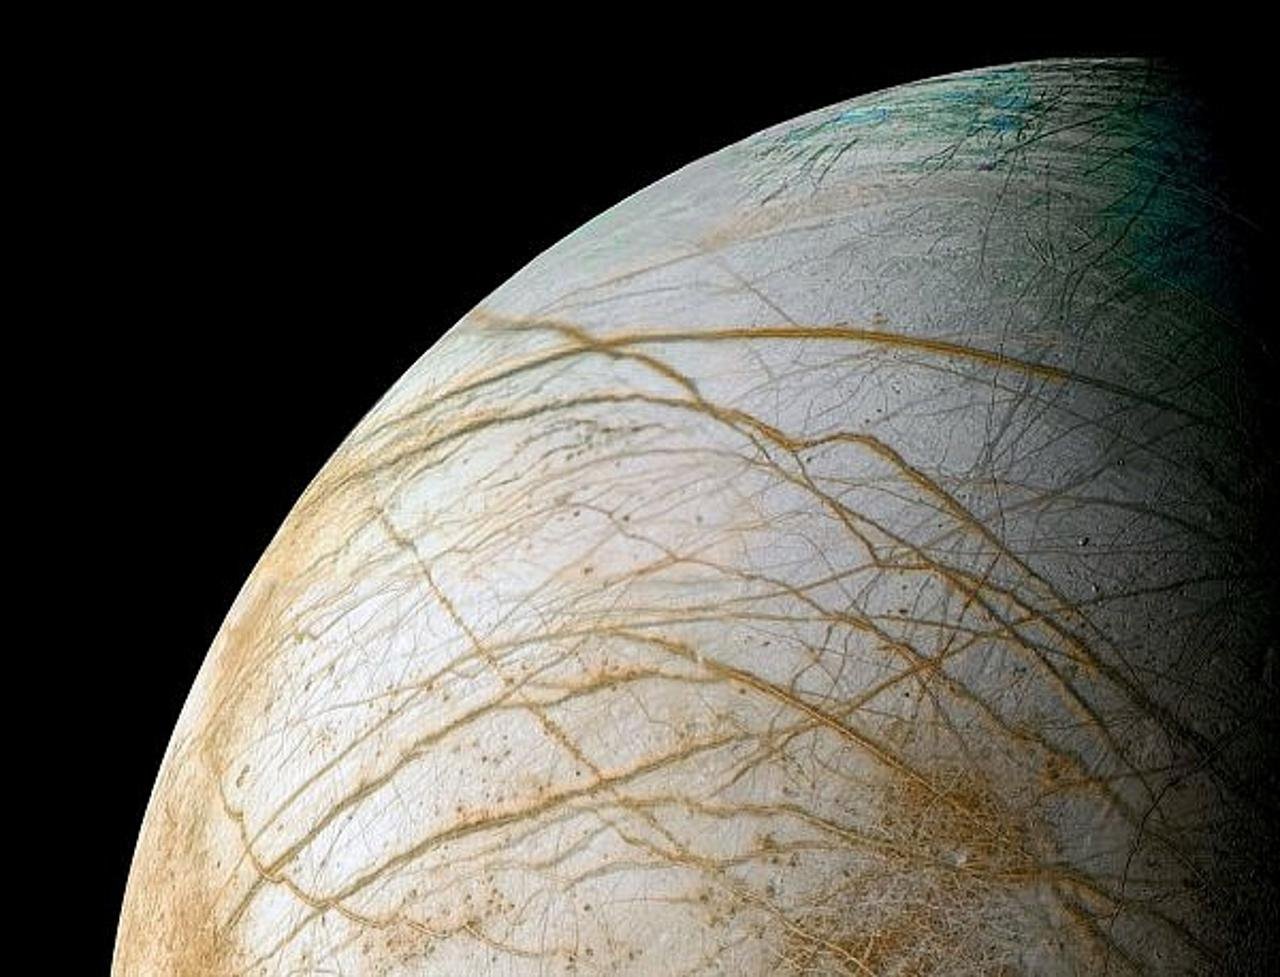 Cпутник Юпитера Европа может светиться в темноте, выяснили планетологи